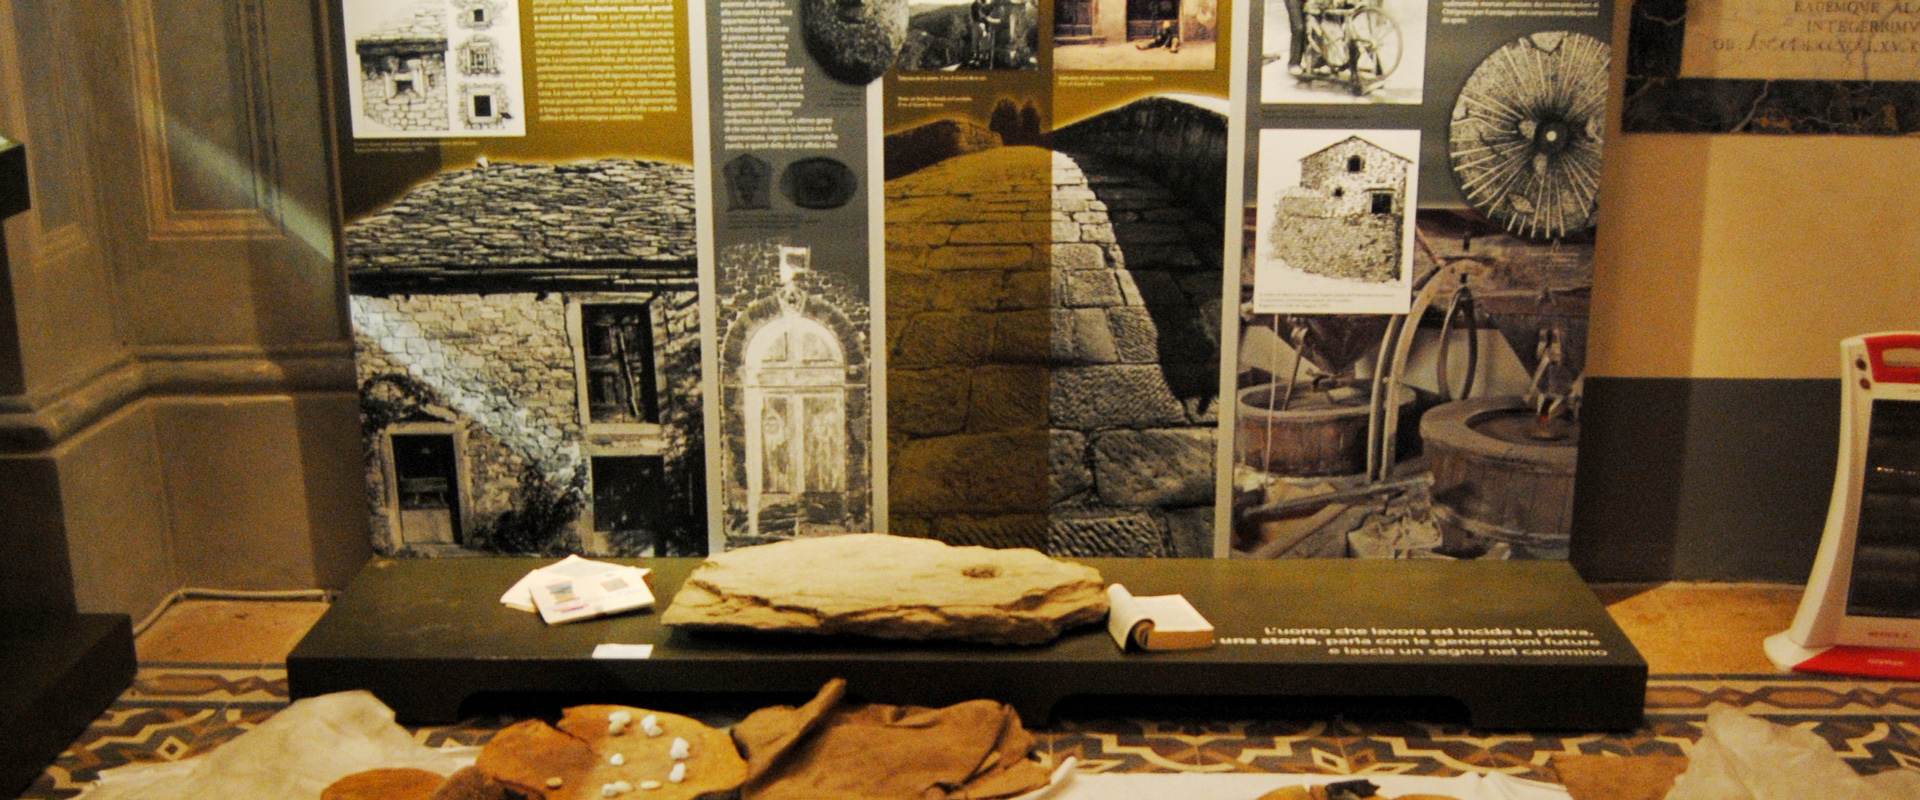 Ecomuseo del Casentino : un tuffo nella storia tra partigiani, assedi medievali e castelli perduti